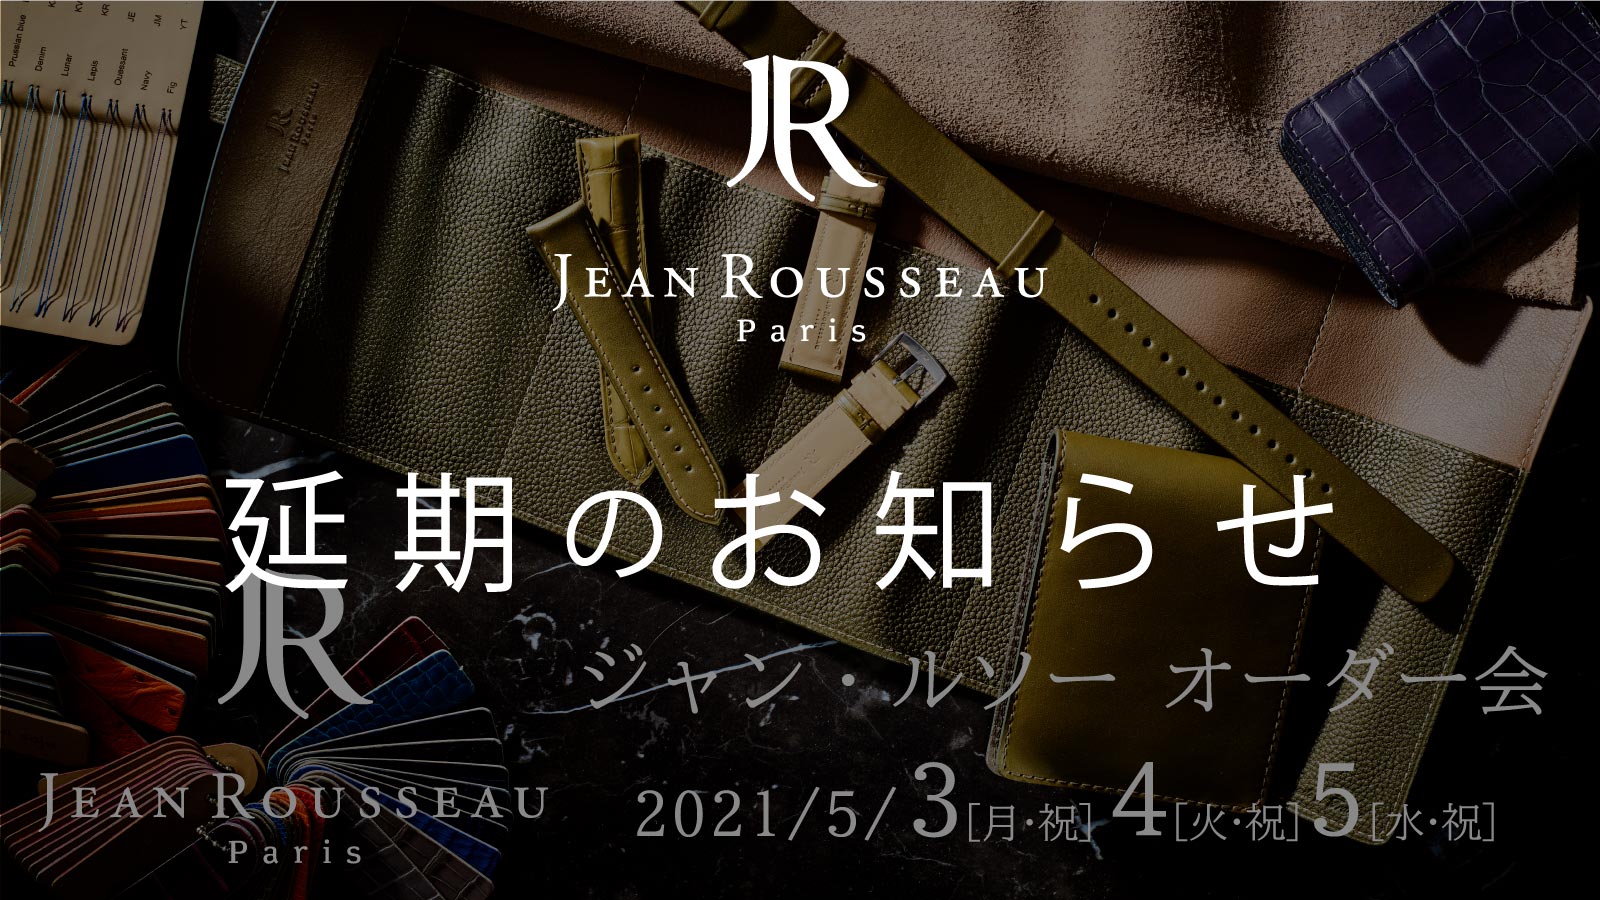 【開催延期のお知らせ】JEAN ROUSSEAU ジャン・ルソー オーダー会